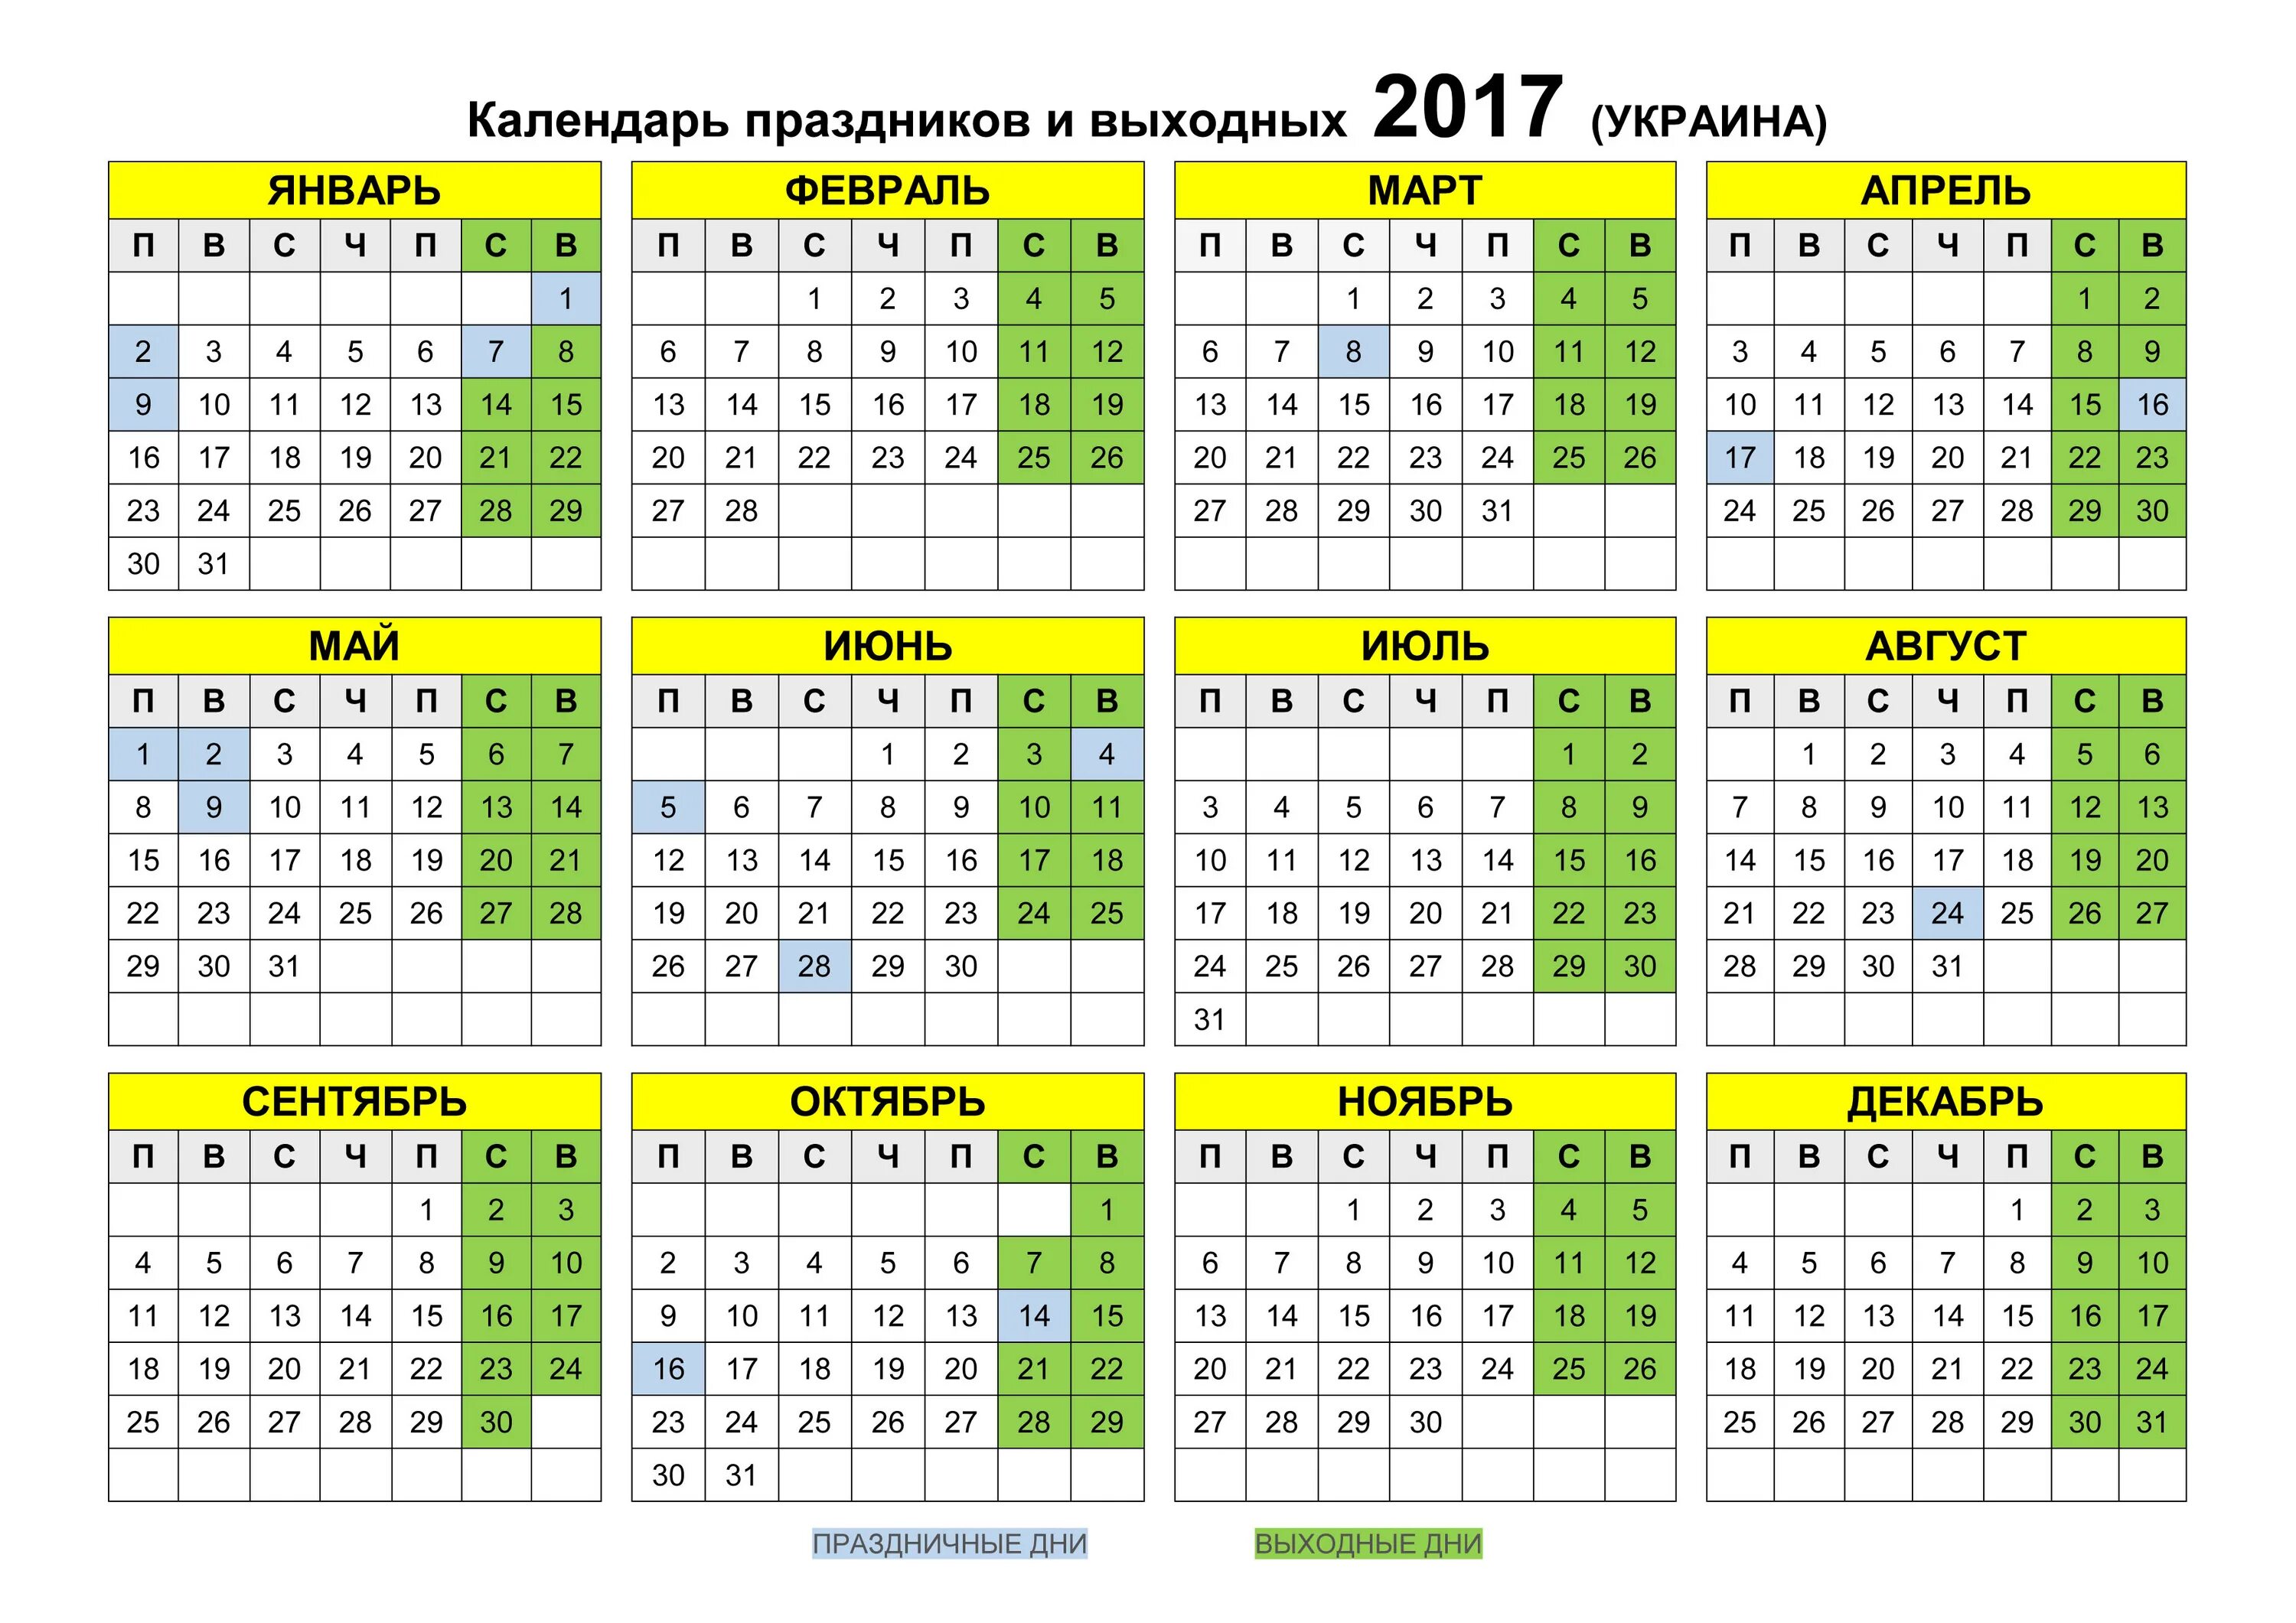 Календарь 2017 месяцам. Календарь 2017 года. Календарь на 2017 год с праздниками. Производственный календарь 2017 года. Календарь 2017г.по месяцам.